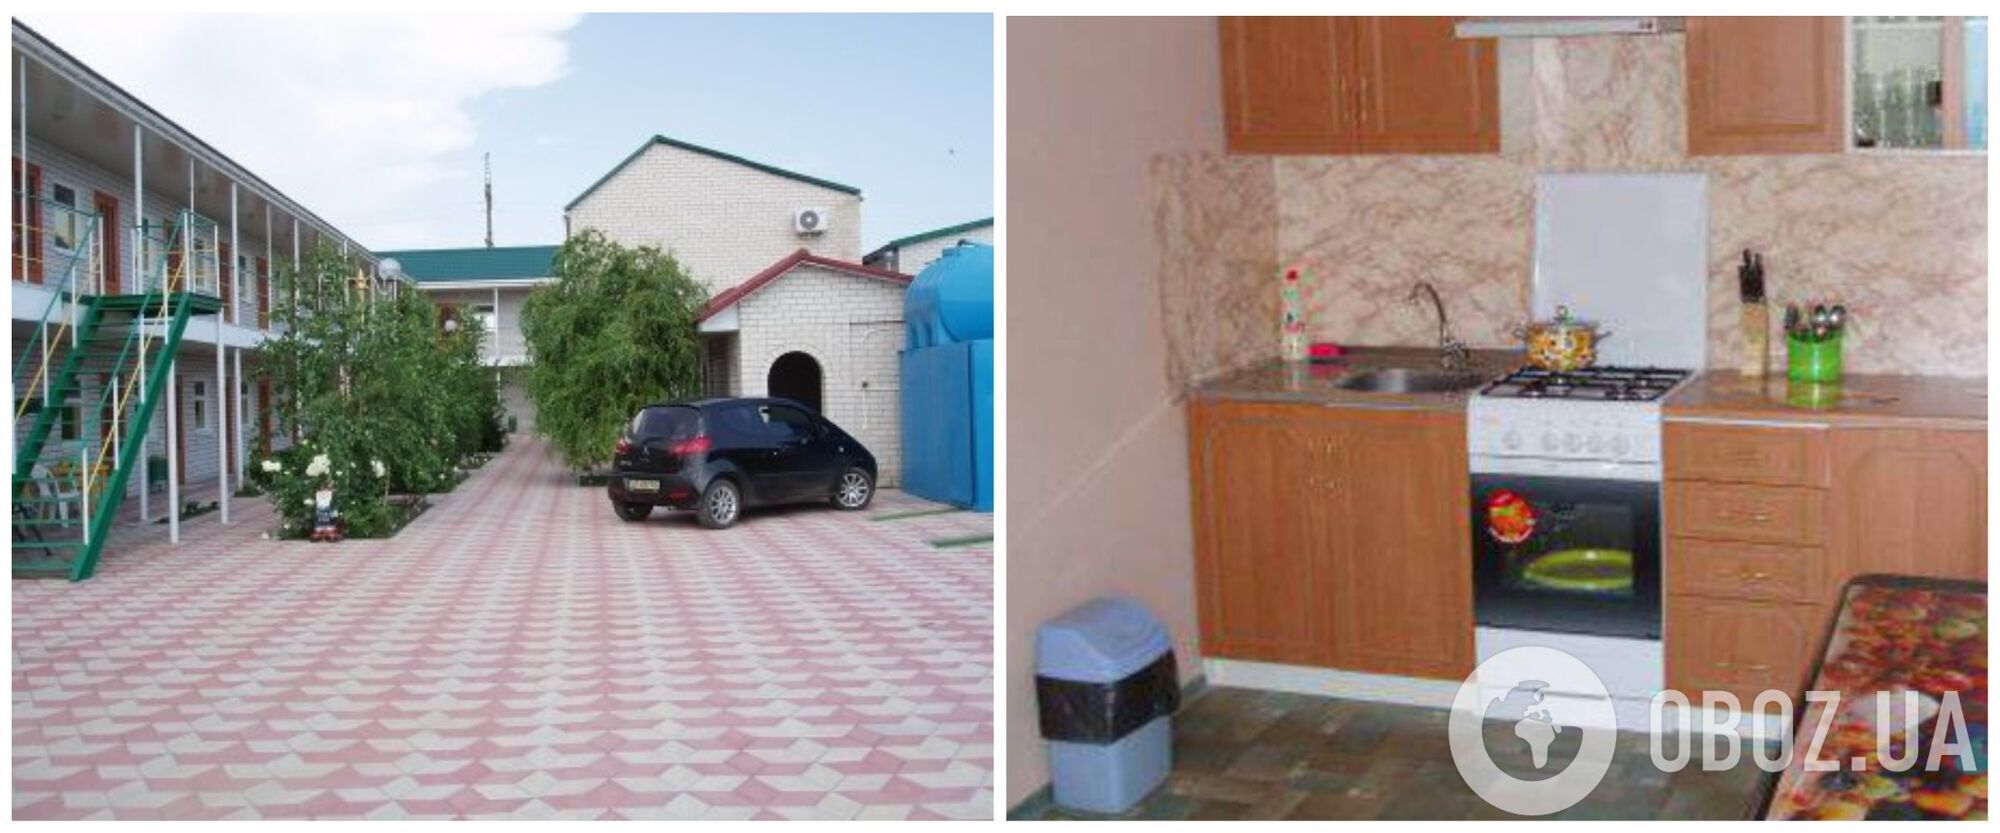 Гостевой дом "Агат" в центре Кирилловки с общей кухней для жильцов